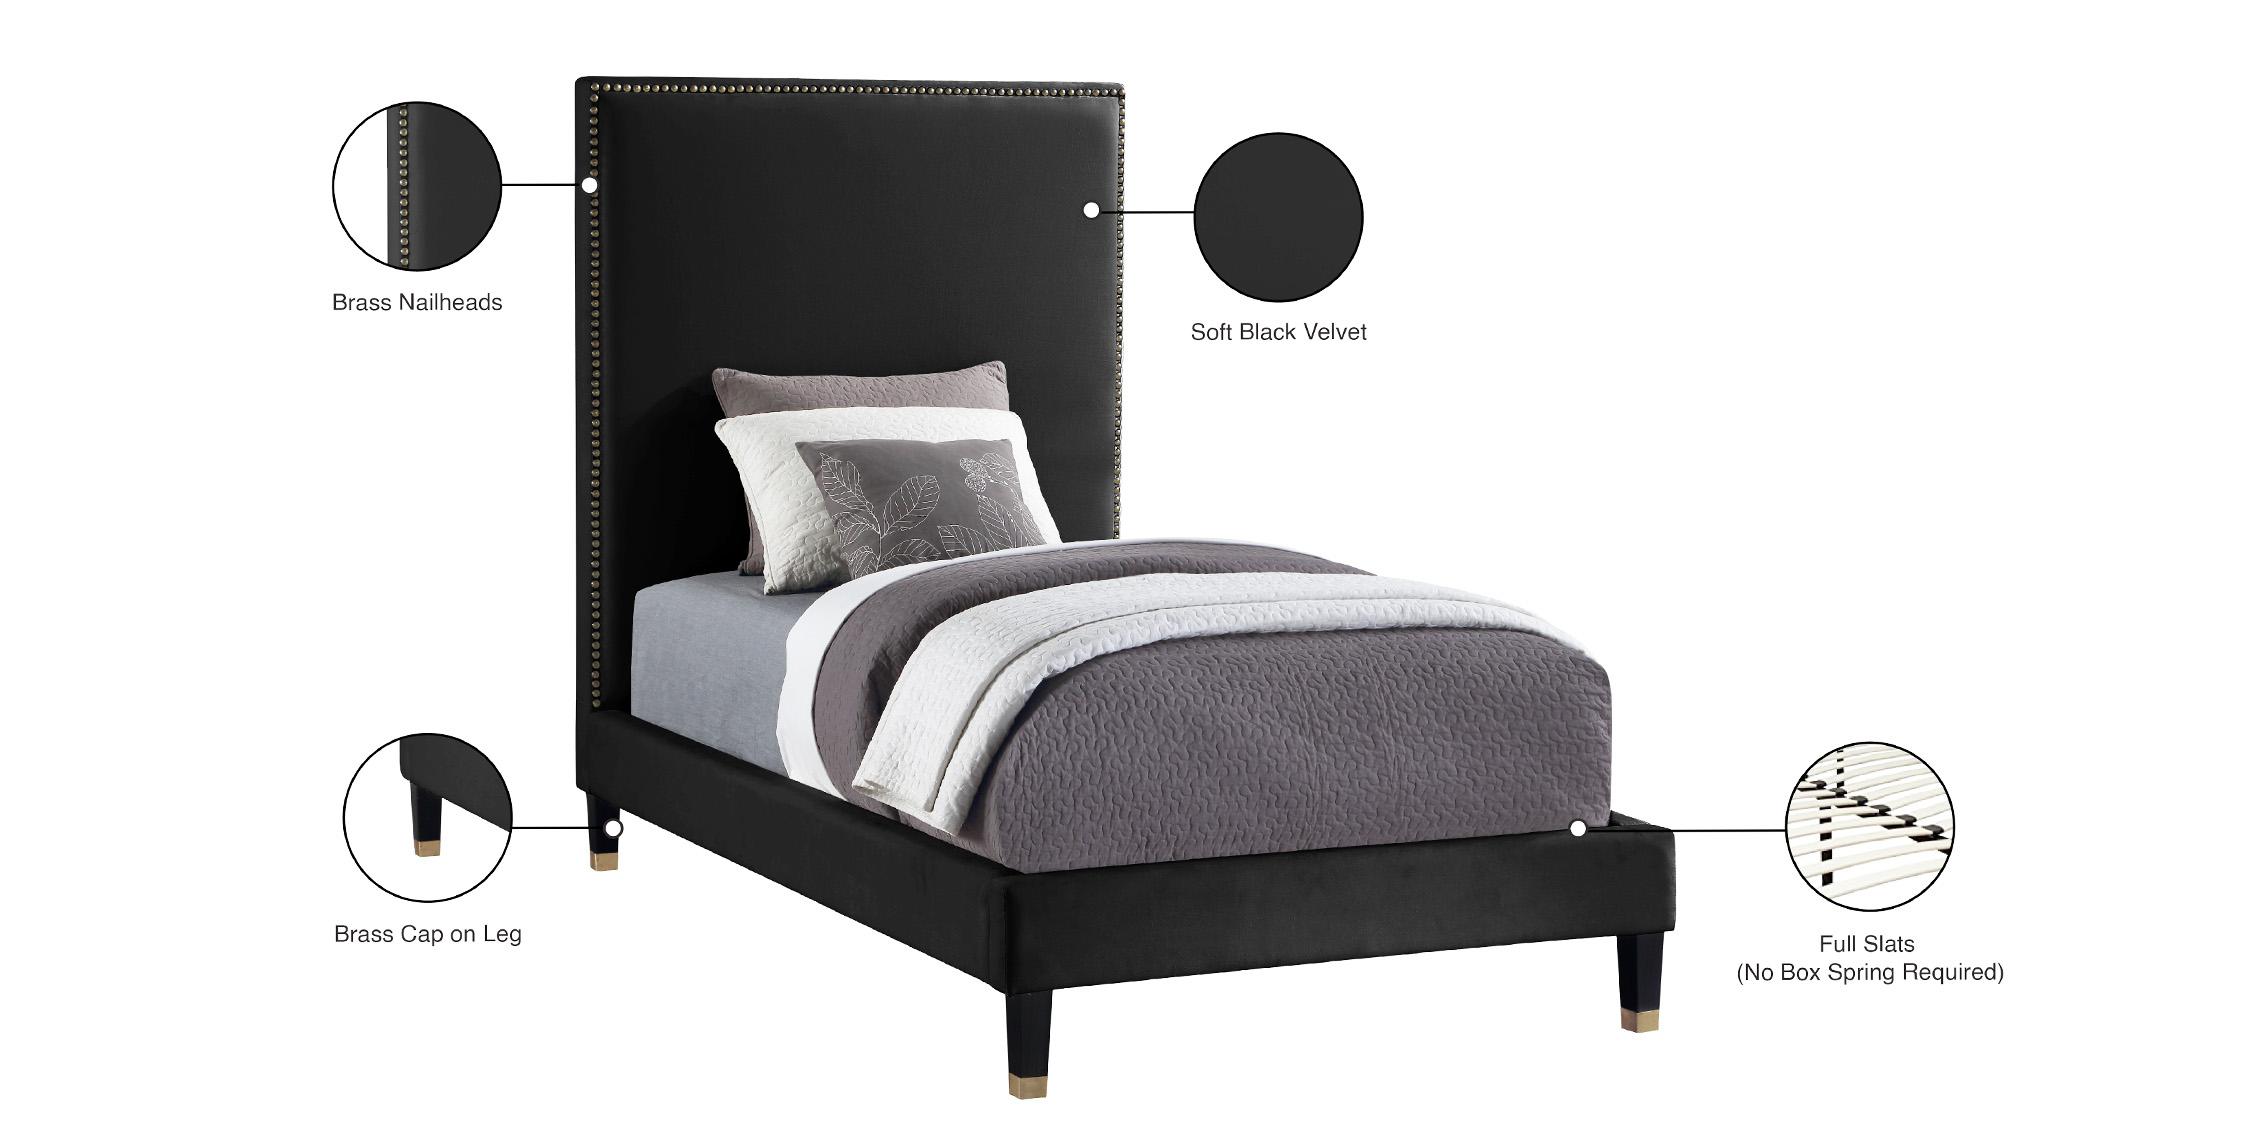 

    
HarlieBlack-T Meridian Furniture Platform Bed
